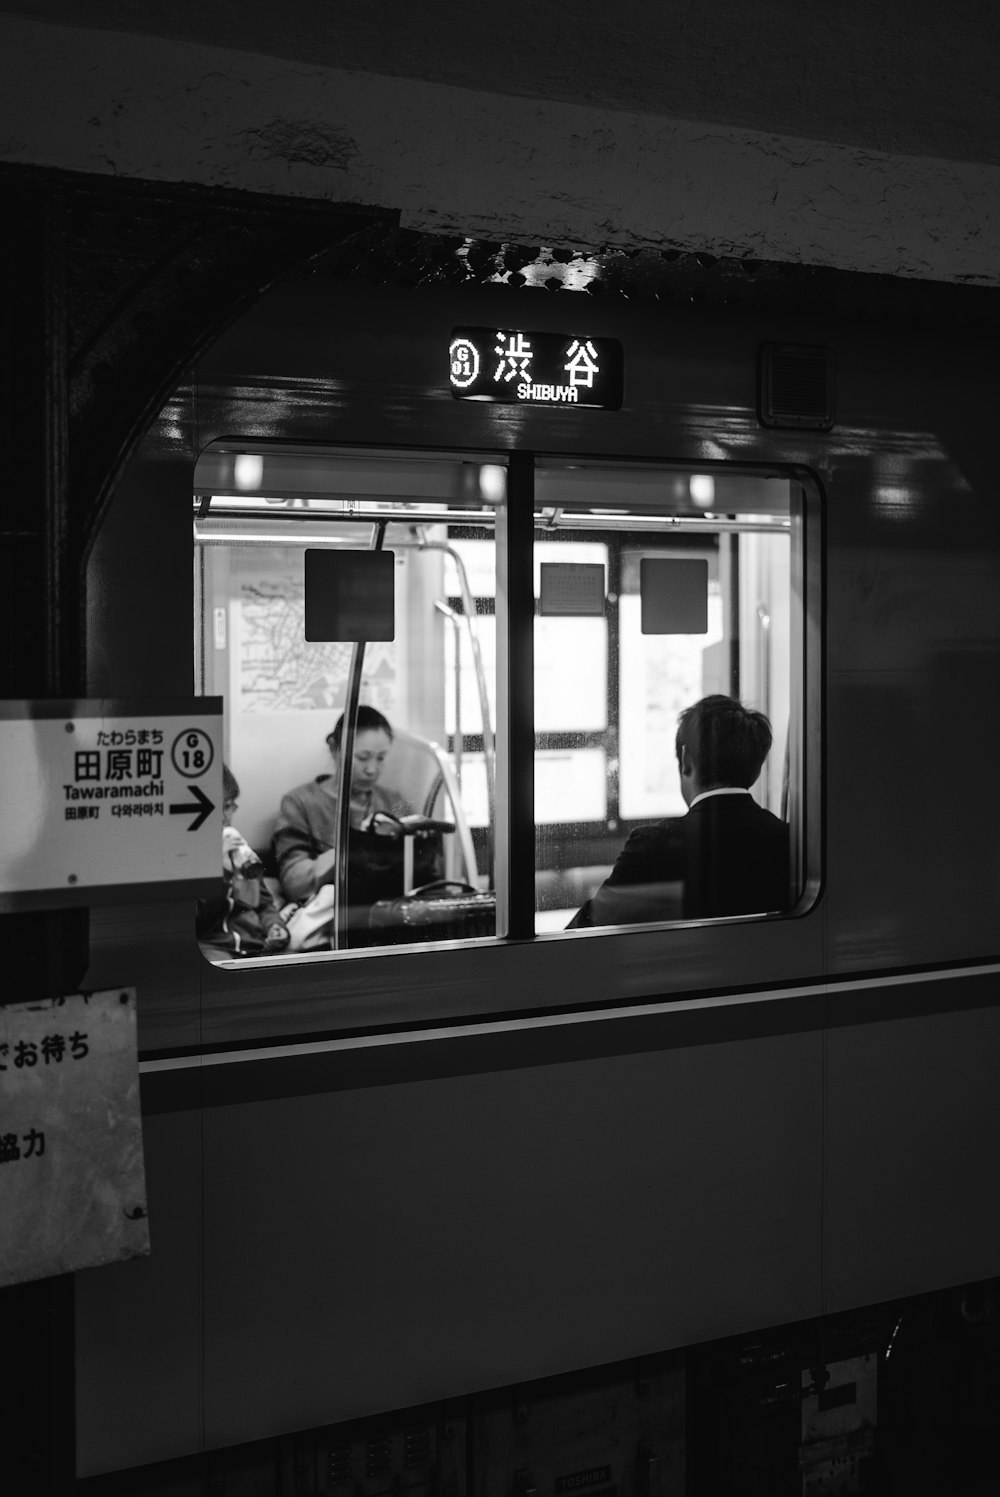 Photo en niveaux de gris de deux personnes assises dans un train